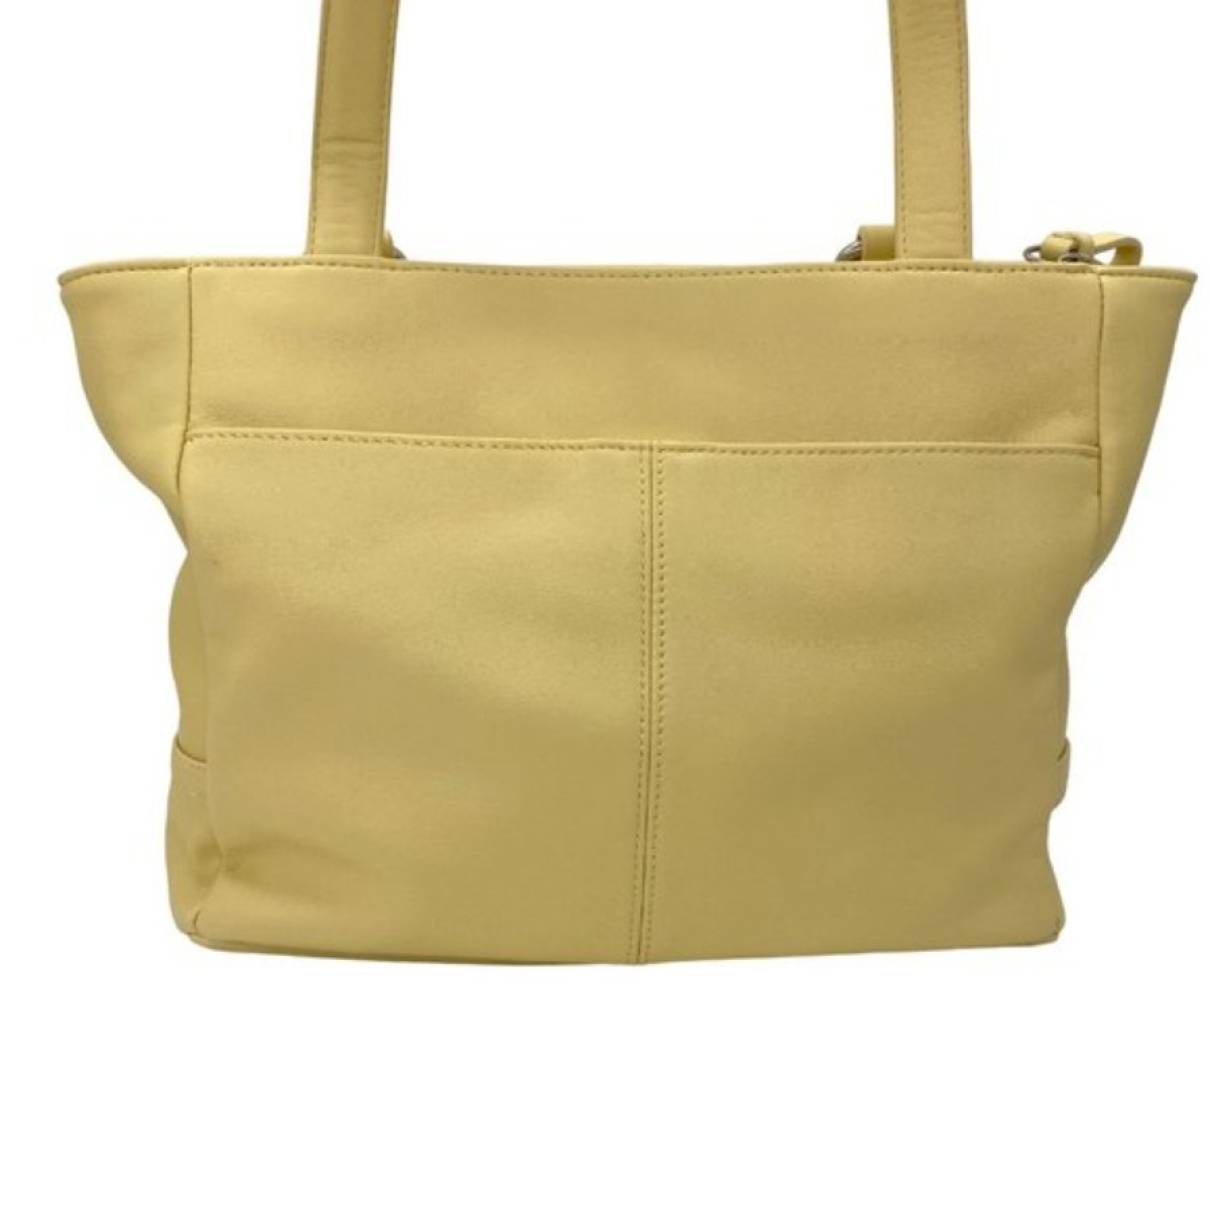 Leather handbag Giani Bernini Yellow in Leather - 34821987